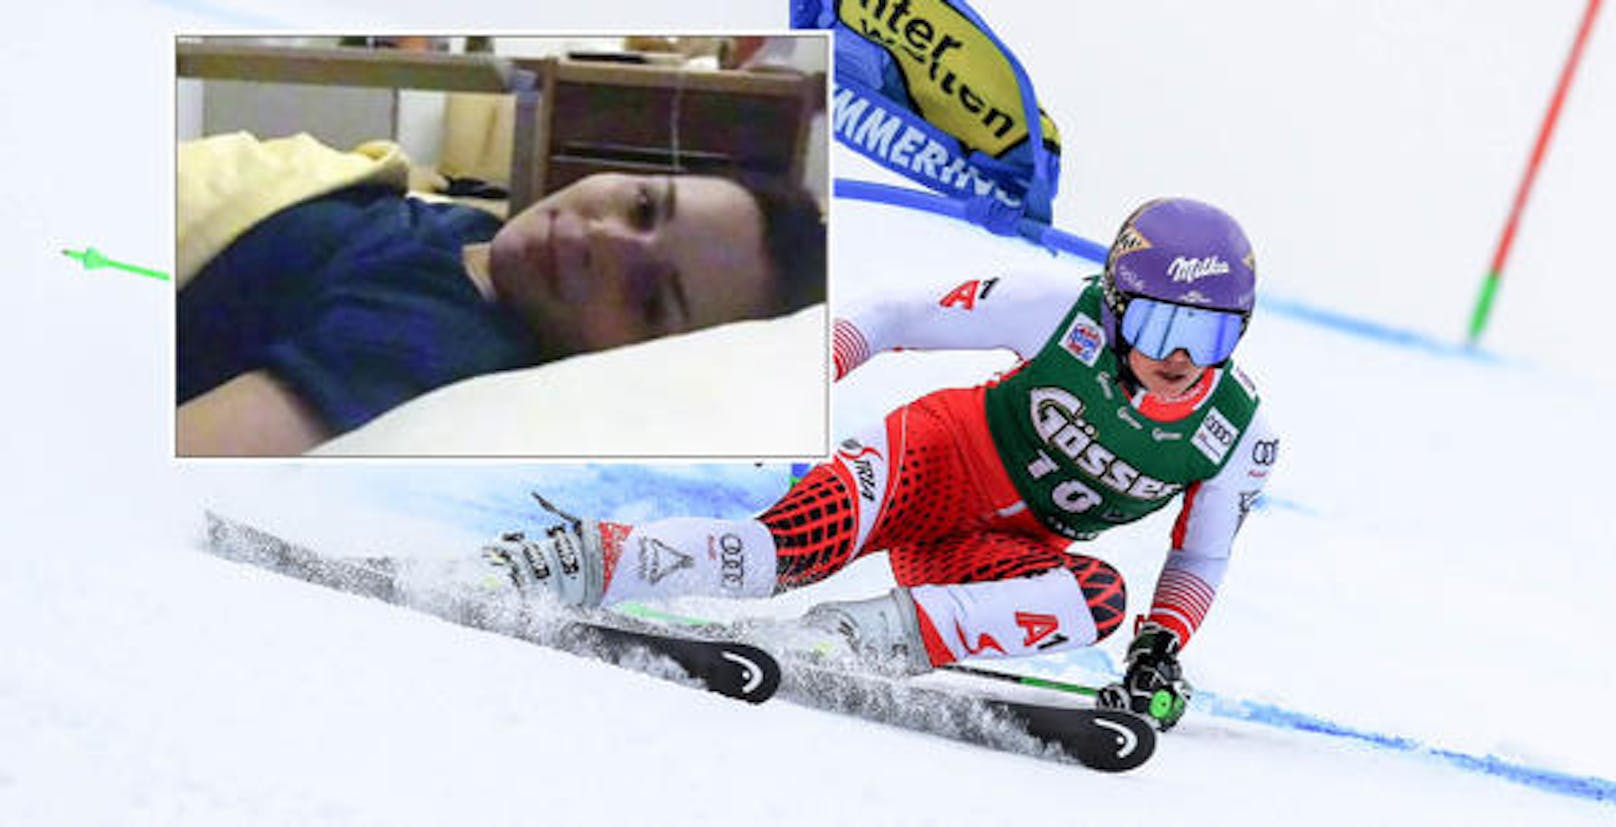 Und dann der große Schock! Am 12. Jänner 2019 verschnitt es Veith im Training in Pozza di Fassa (It) den Ski. Bittere Folge: Kreuzbandriss im rechten Knie. Die Saison inklusive WM waren für die 29-Jährige gelaufen. In den Folge-Monaten versuchte die Ski-Queen "wieder ganz gesund zu werden."